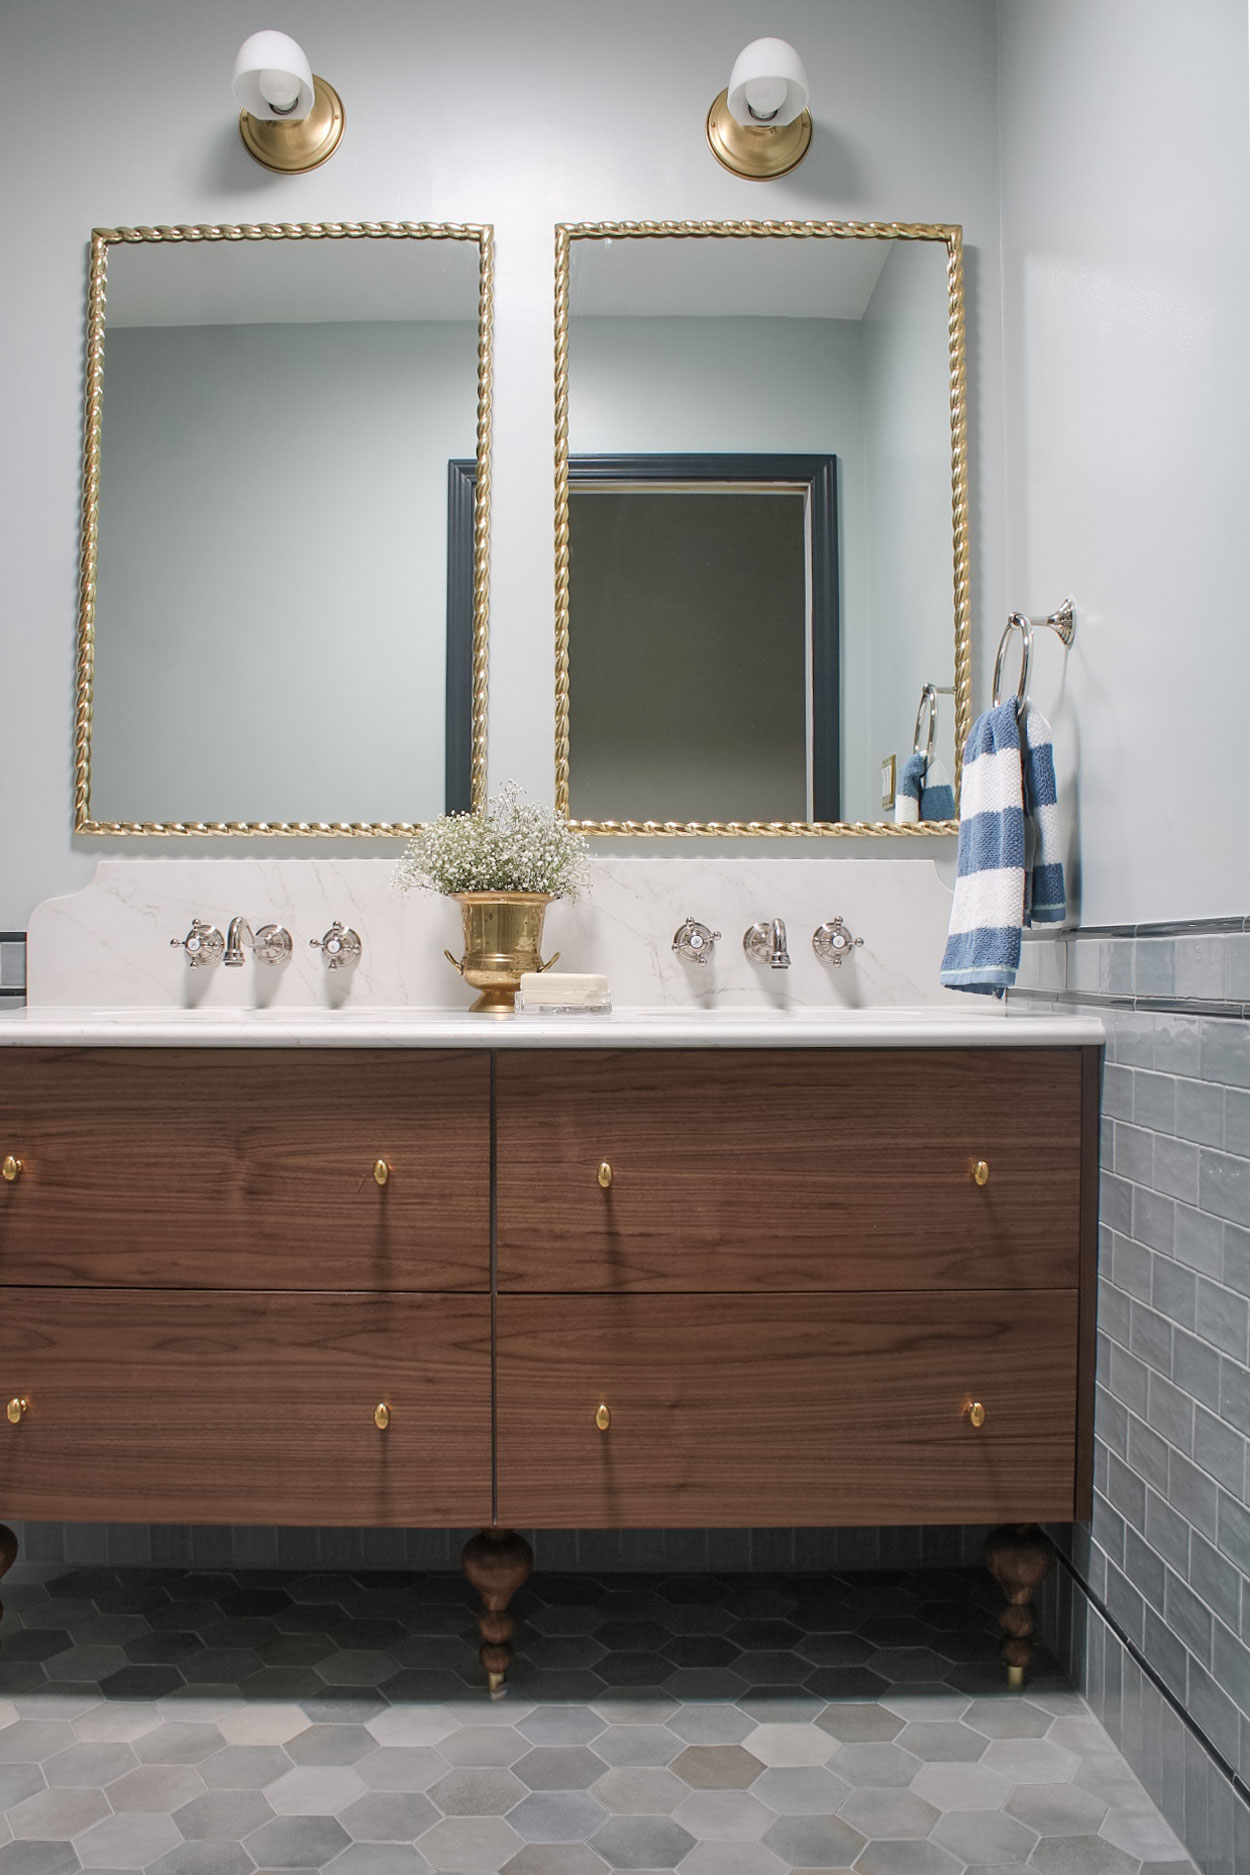 This custom bathroom vanity is an Ikea Godmorgon Hack!